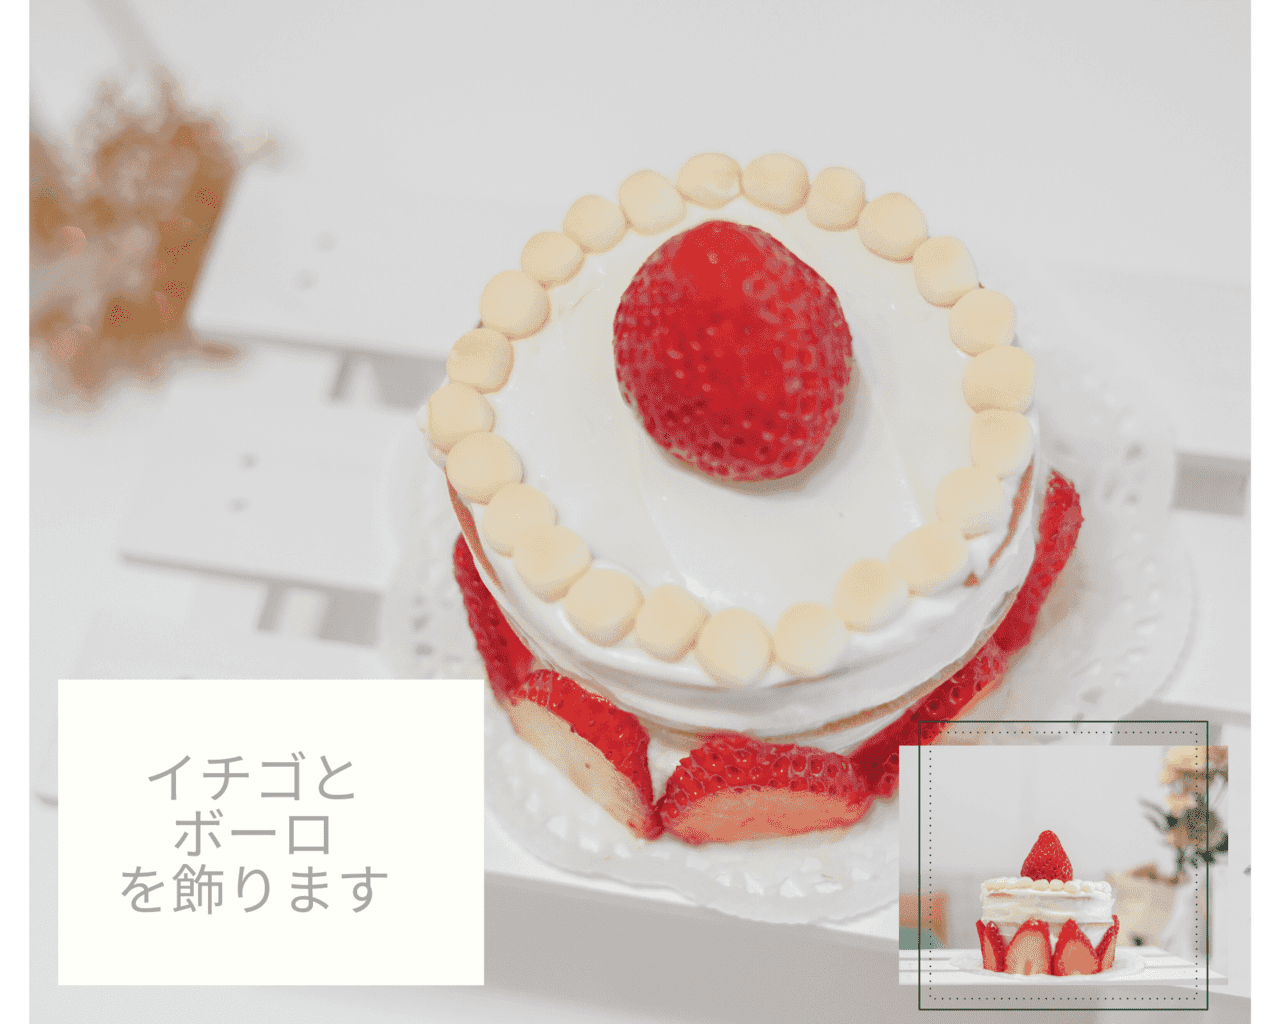 赤ちゃん用ケーキの作り方 スマッシュケーキもやっちゃいましょう 千葉 芳広 子供から家族まで自然でおしゃれに残す人生の写真館 ライフスタジオ